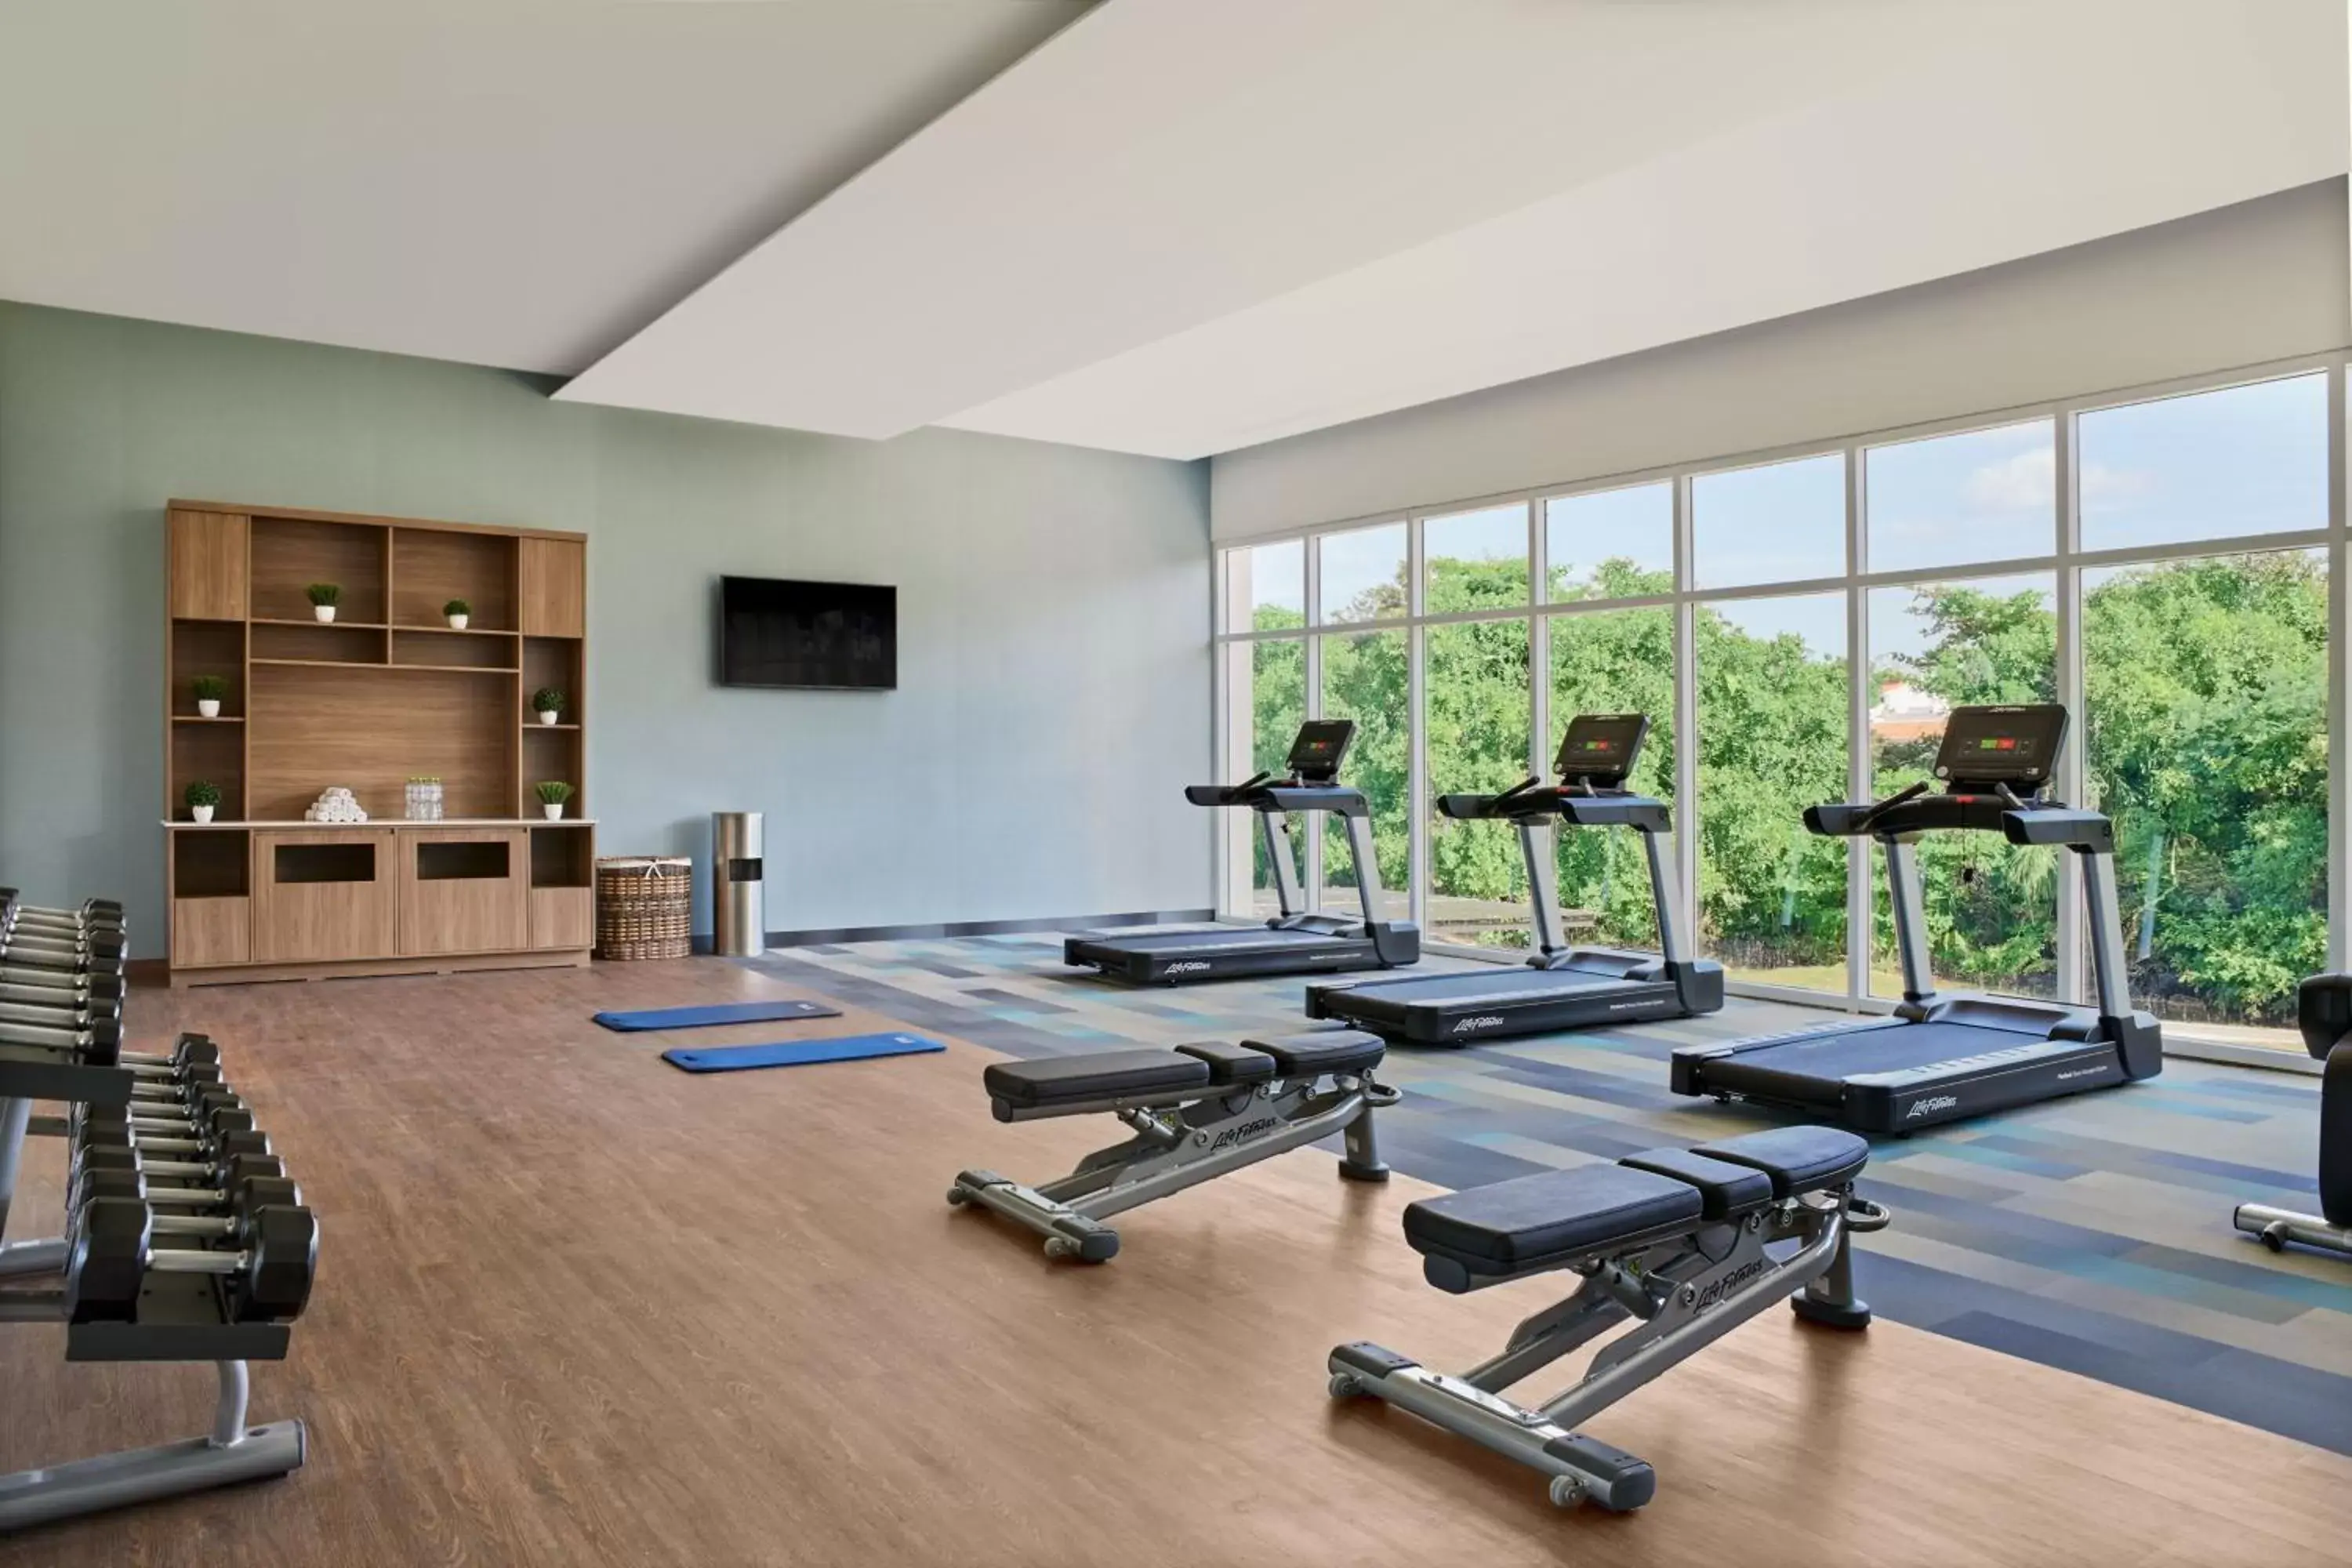 Fitness centre/facilities, Fitness Center/Facilities in Residence Inn by Marriott Playa del Carmen